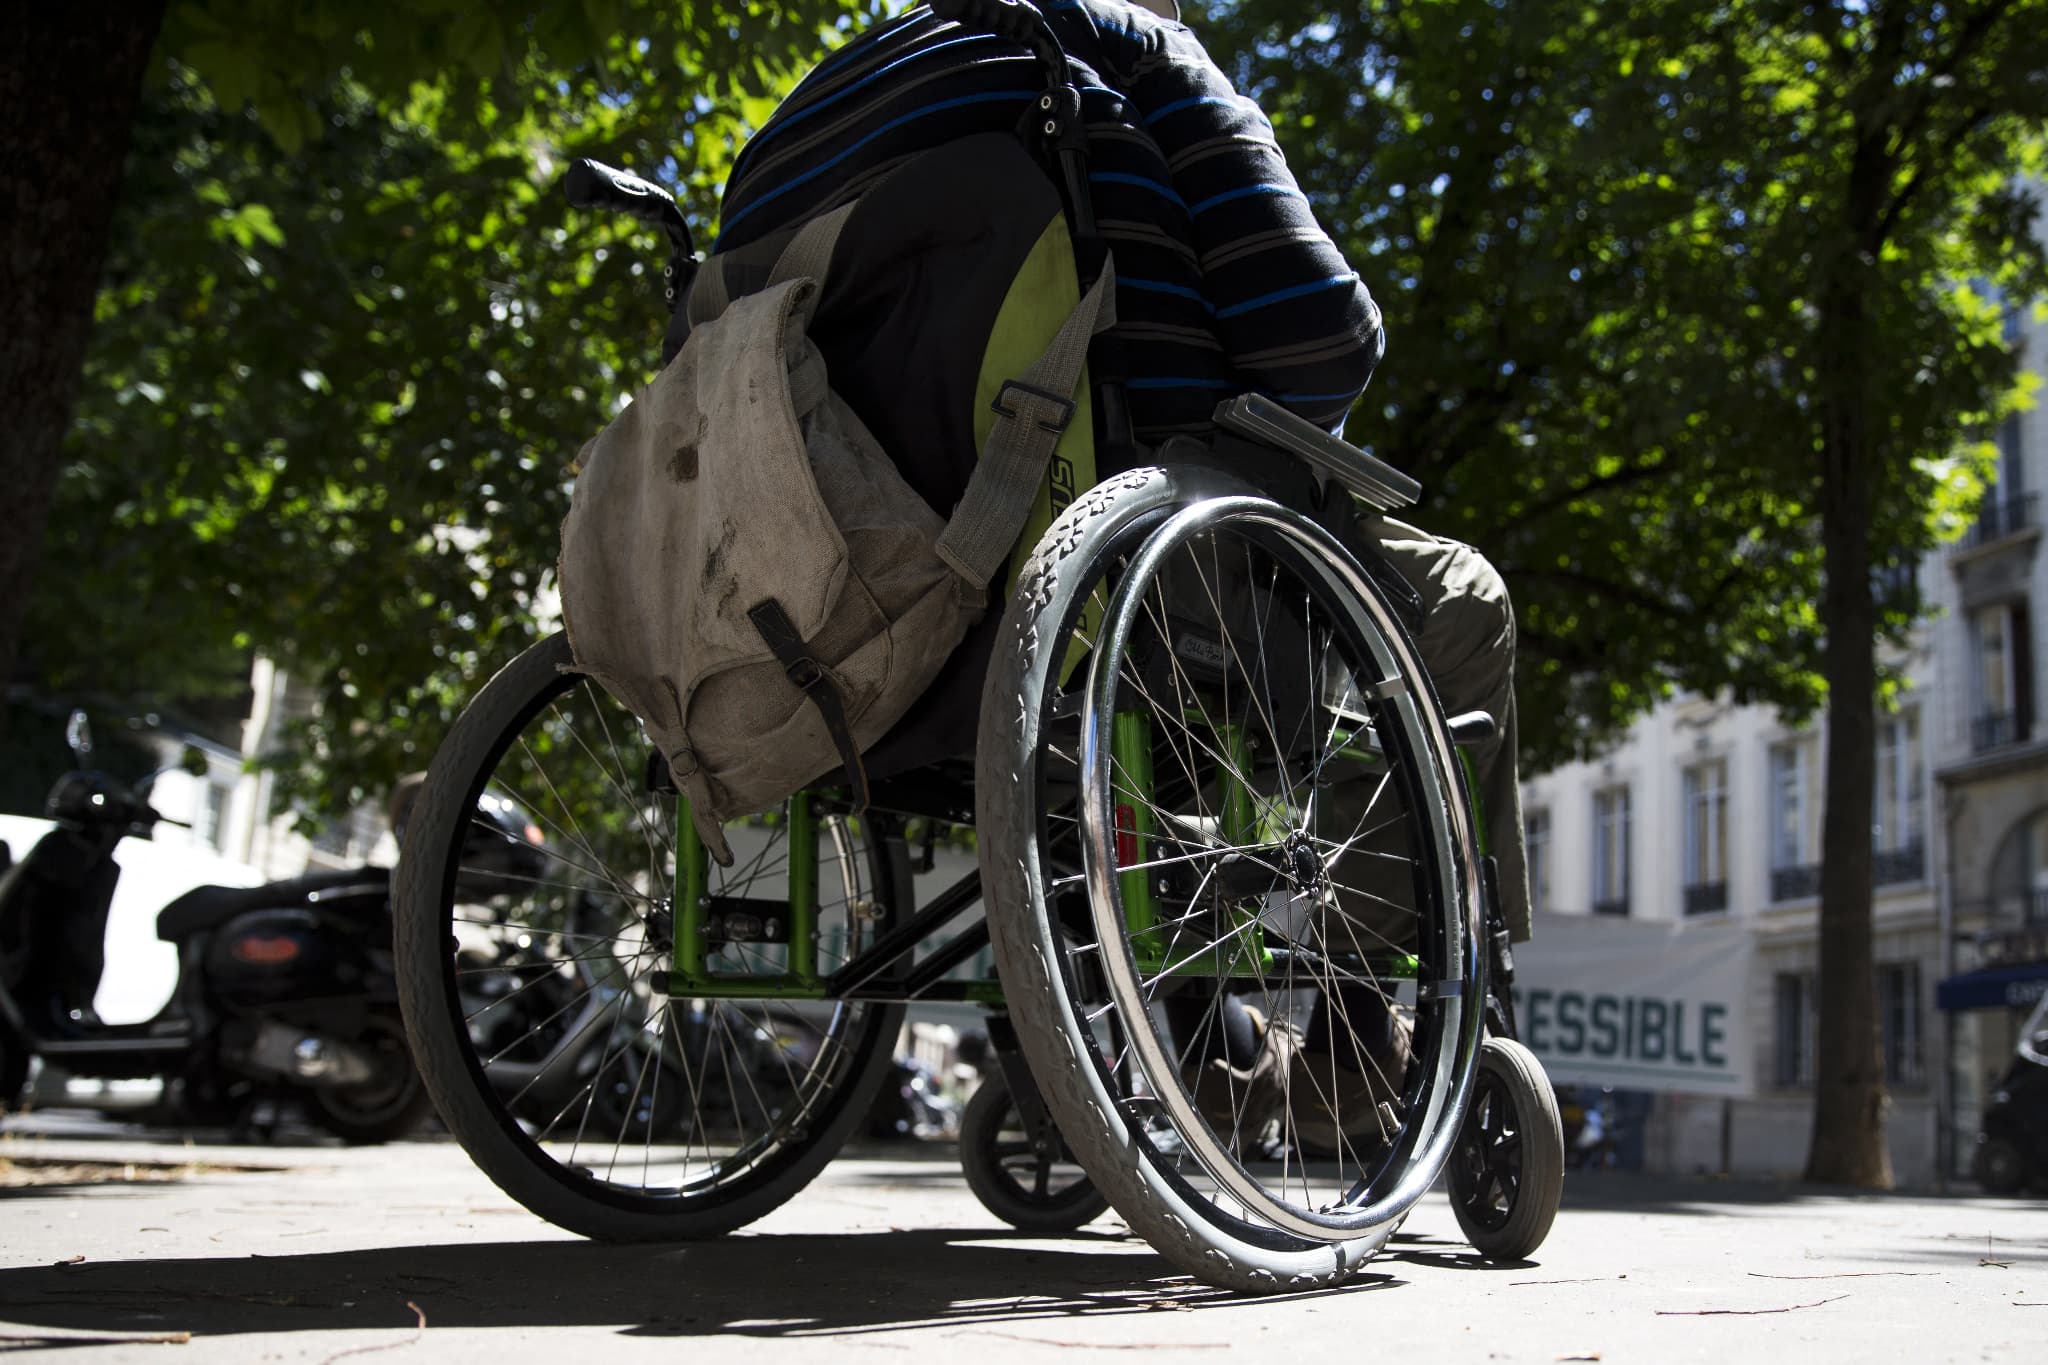 remboursement intégral des fauteuils roulants: le gouvernement va-t-il tenir sa promesse?